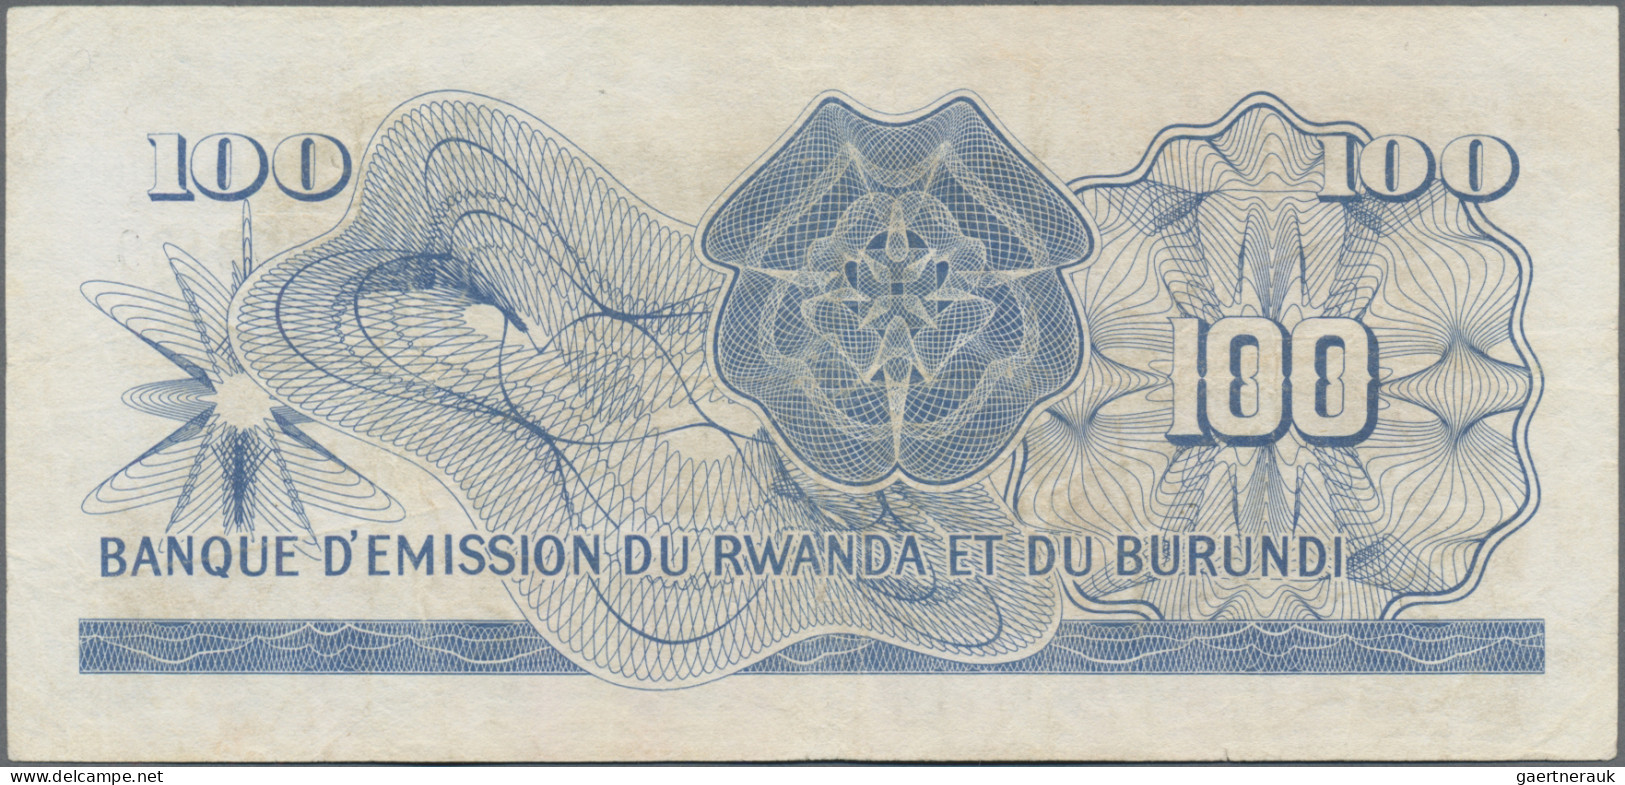 Rwanda-Burundi: Banque D'Émission Du Rwanda Et Du Burundi, 100 Francs 1960, P.5, - Ruanda-Urundi